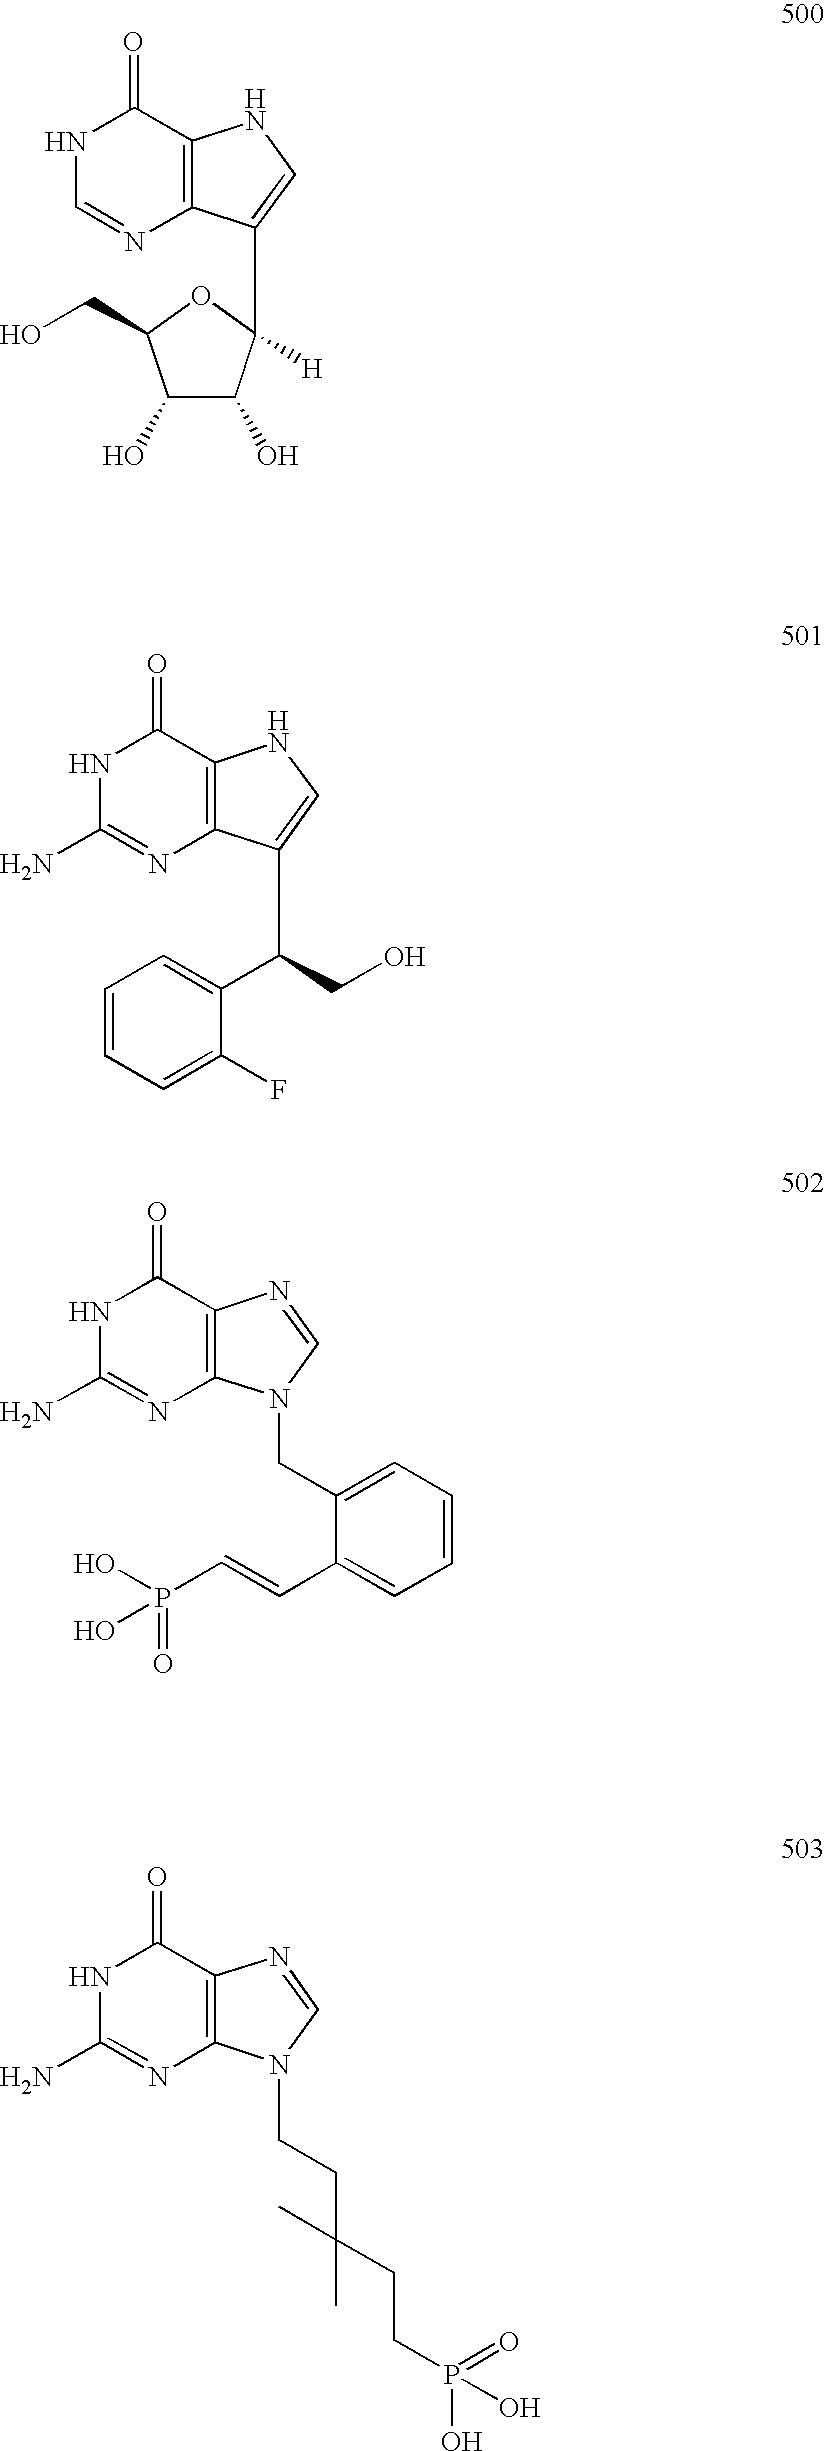 Purine nucleoside phosphorylase inhibitory phosphonate compounds